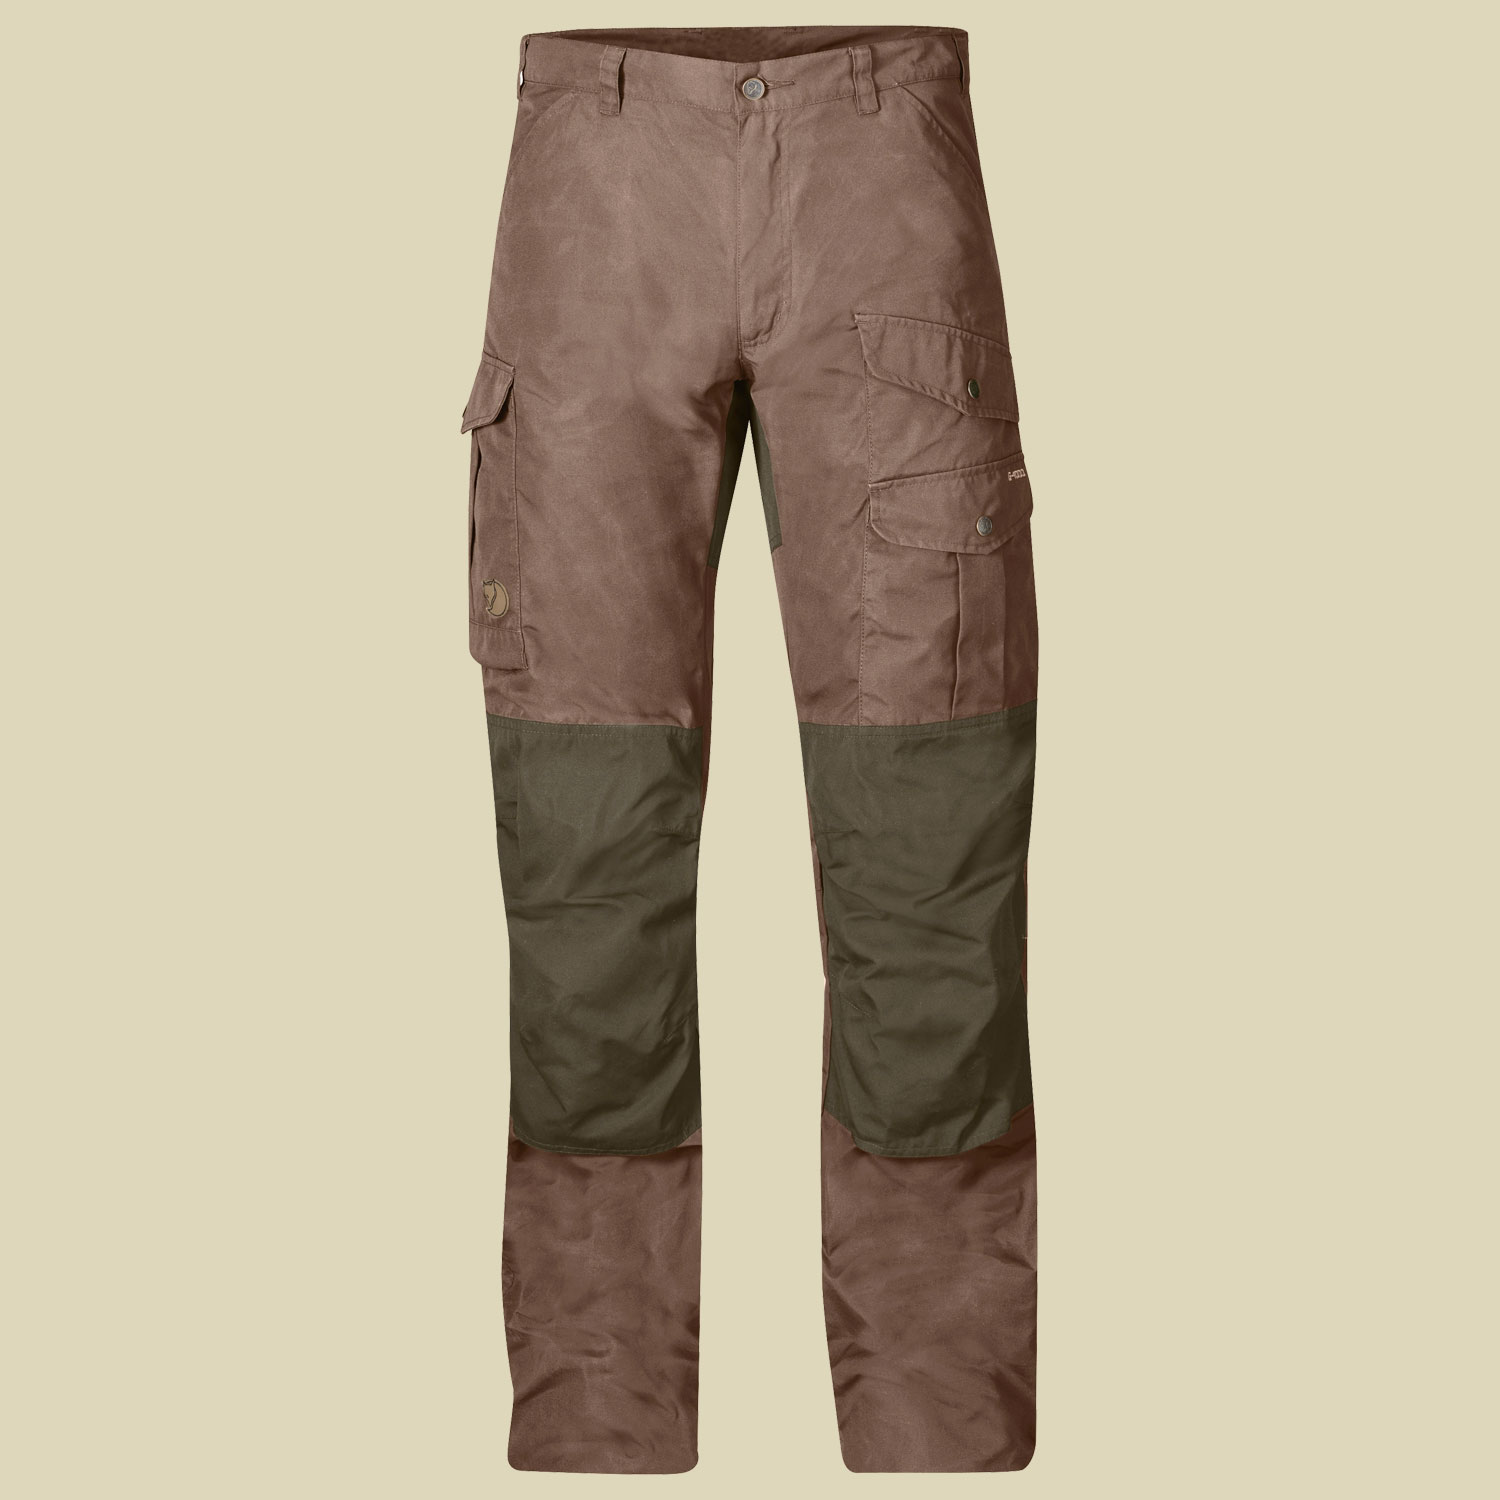 Barents Pro Trousers Men Größe 48 Farbe dark sand/dark olive